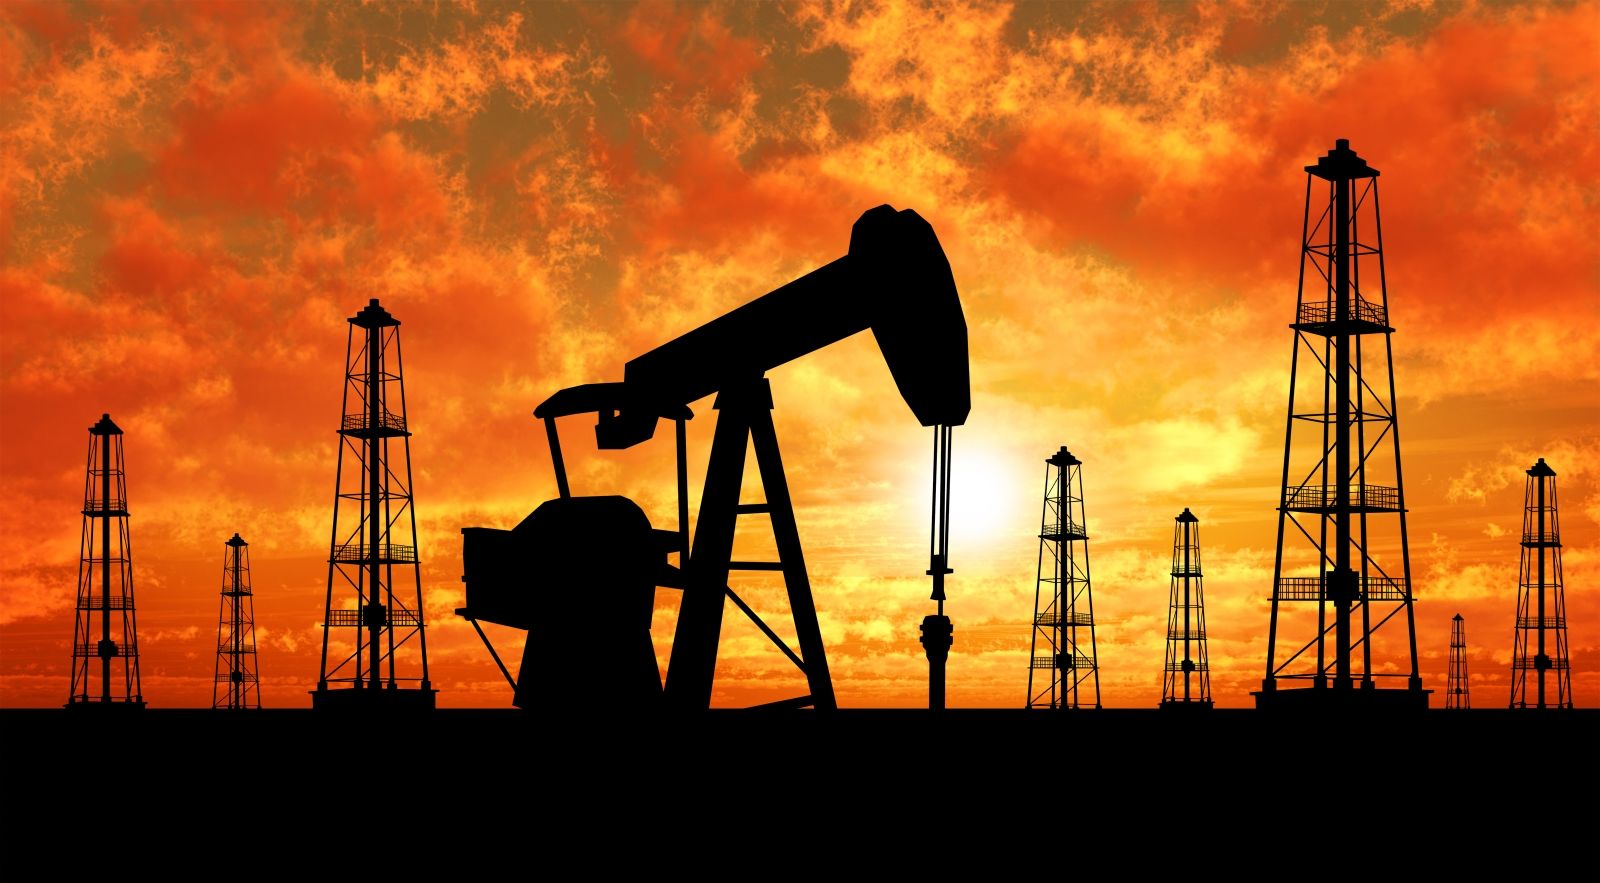 Цены на нефть рухнули: новость из Ирана предвещает России тяжелый финансовый удар